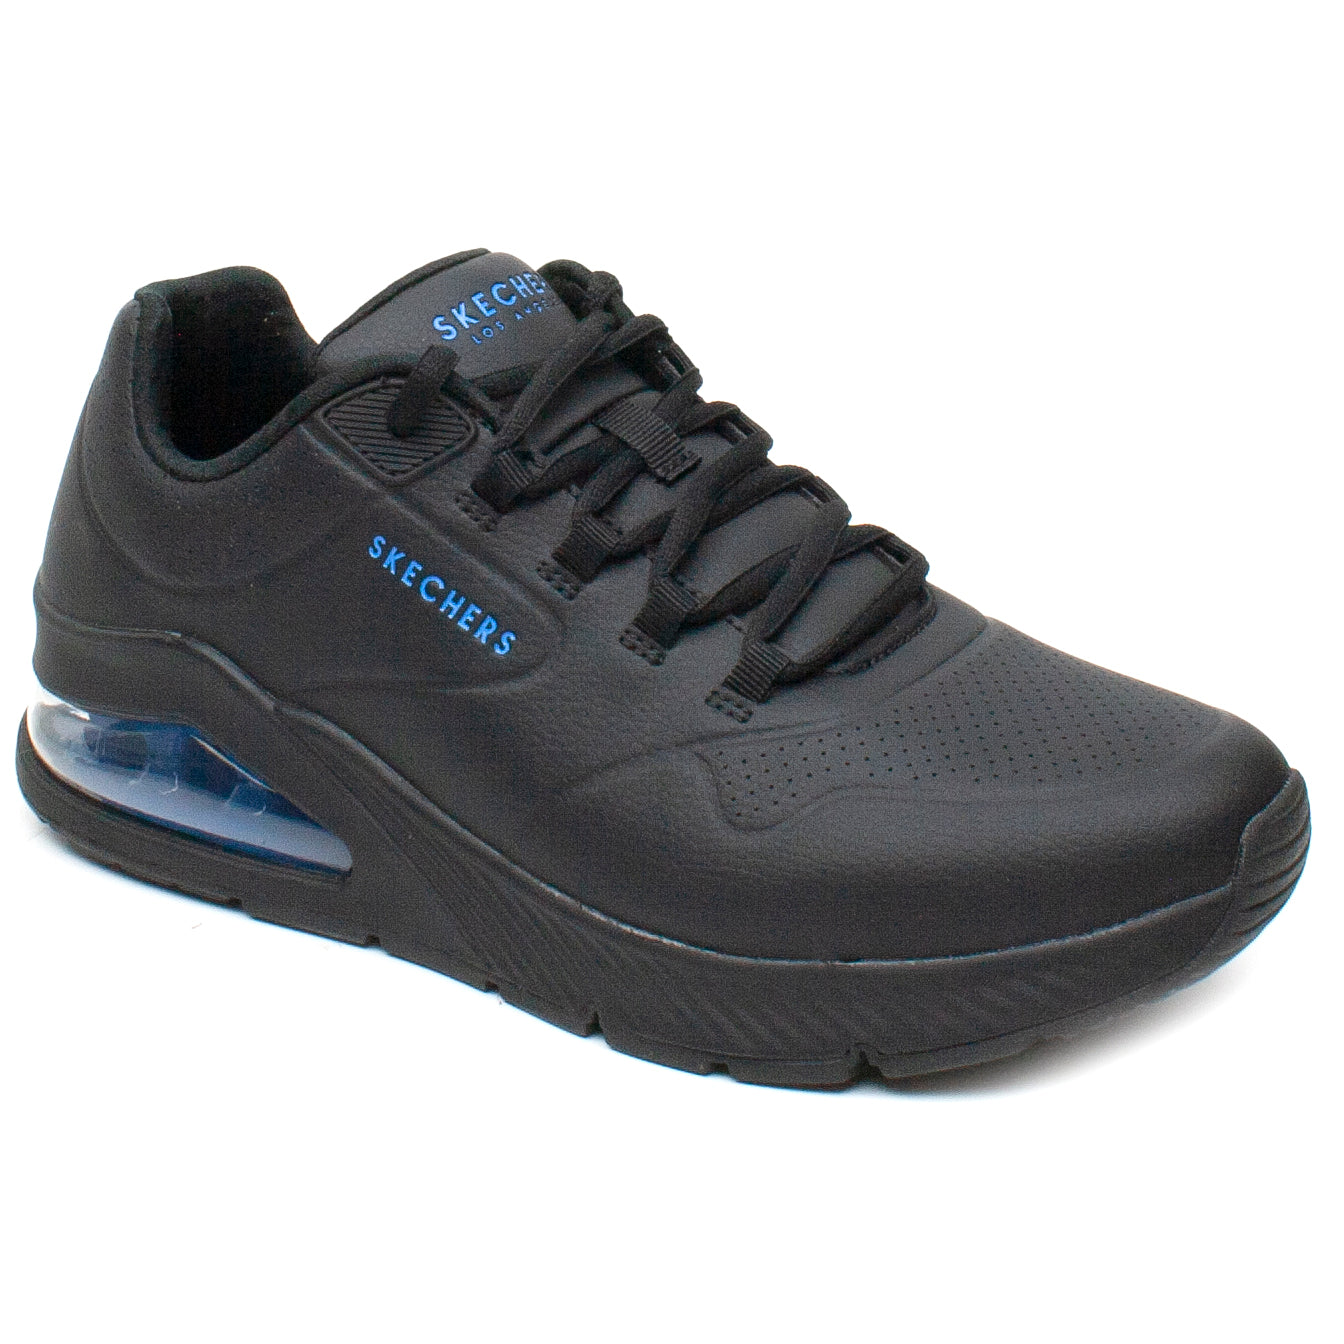 Skechers Pantofi barbati sport 232181 negru IB2197-NG